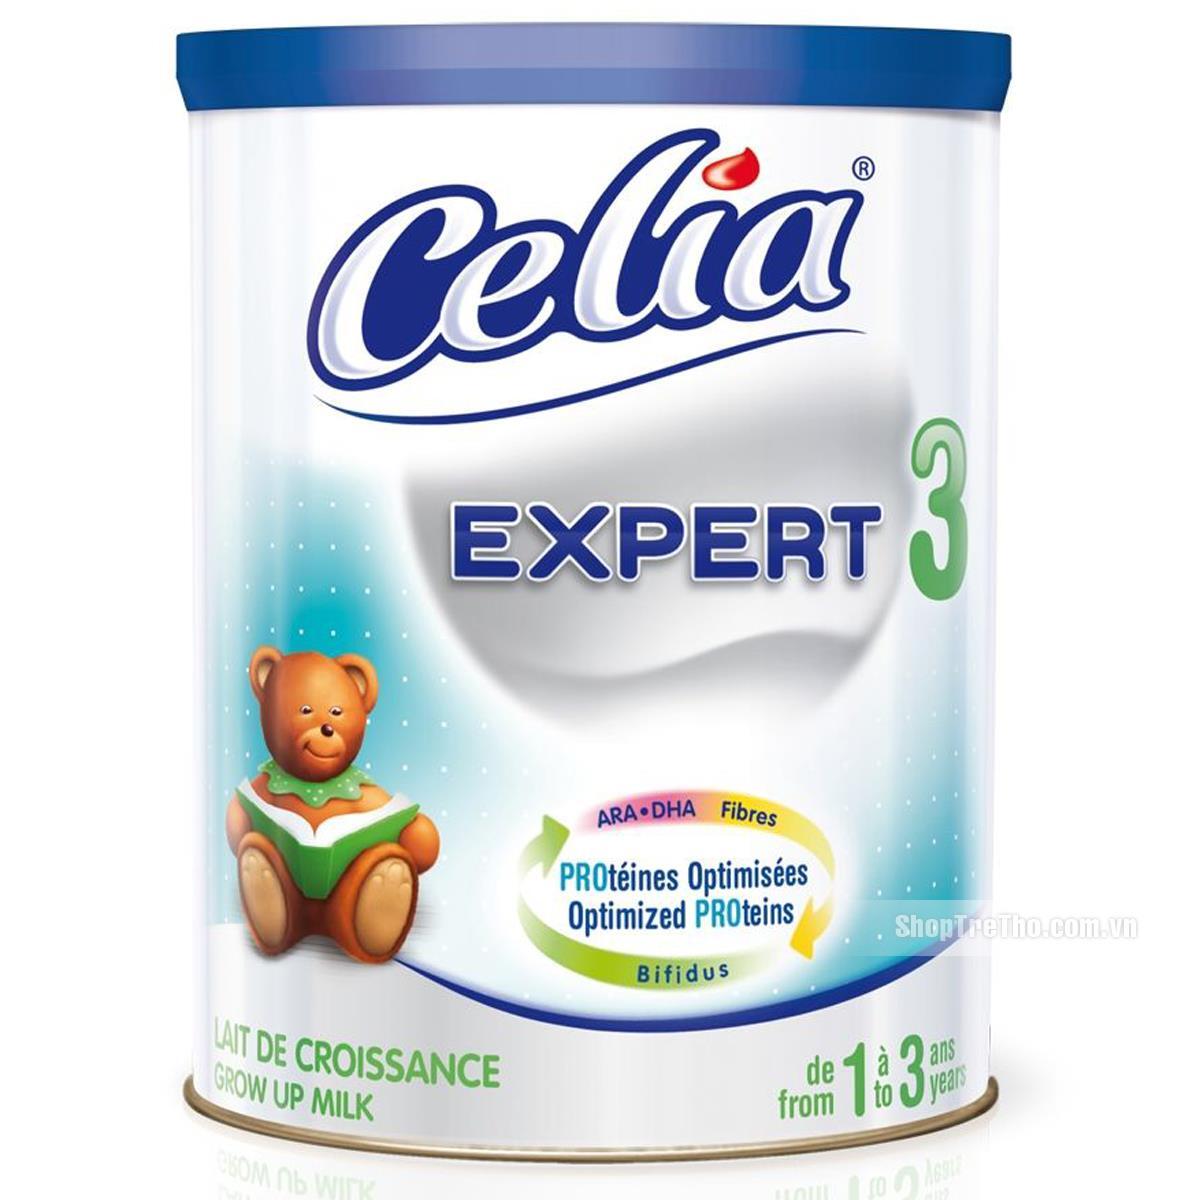 Sữa bột Celia Expert 3 - hộp 900g (dành cho trẻ từ 1 - 3 tuổi)